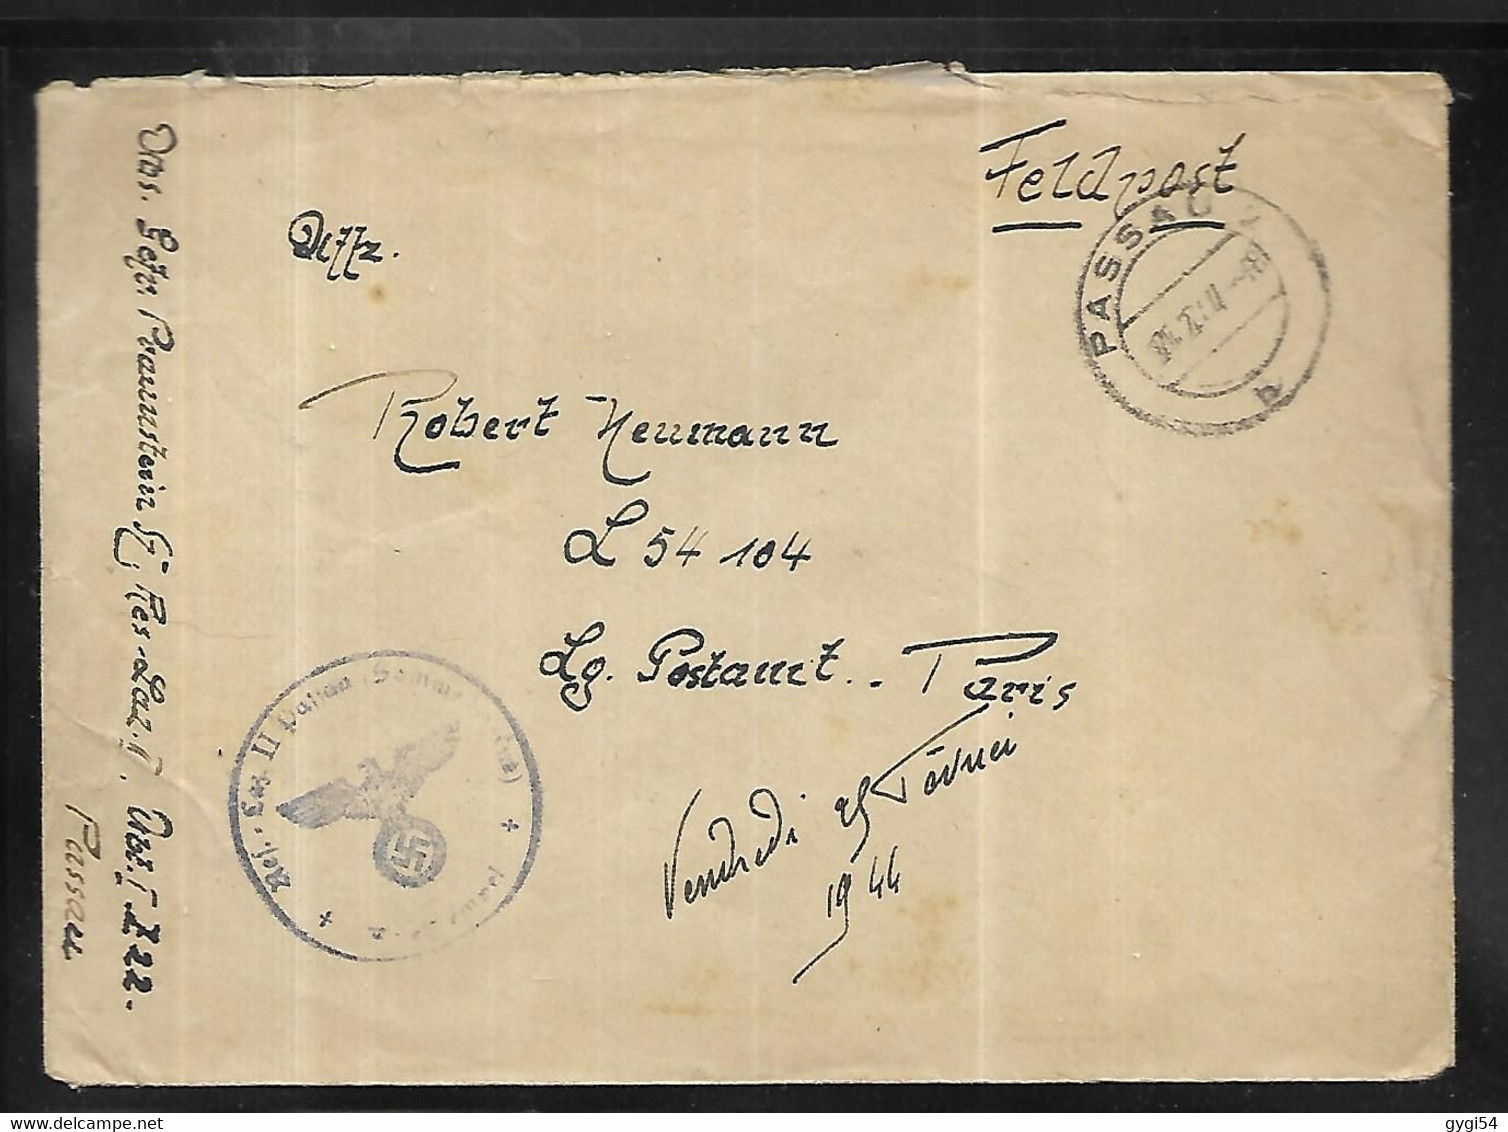 Allemagne Lettre De La Feldpost  Censurée Du 25 10 1944 - Briefe